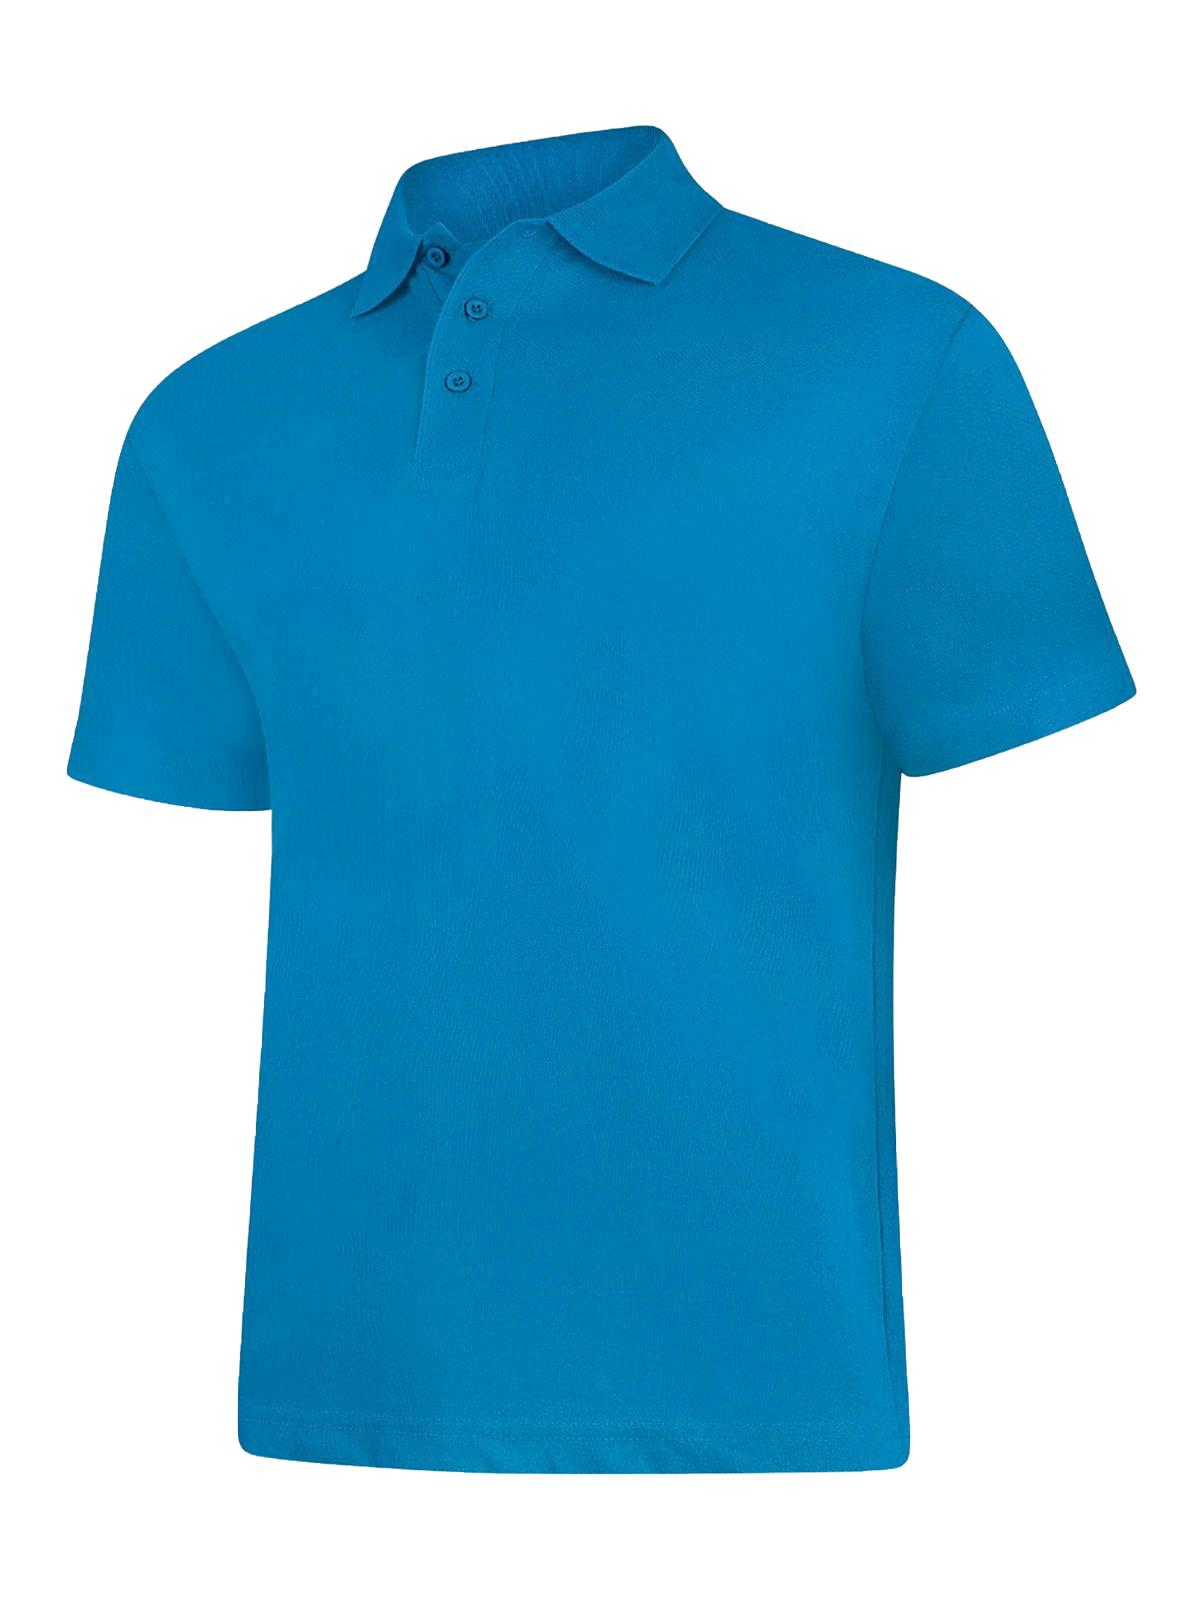 Uneek Men's Ultra Cotton Poloshirt UC114 - Sapphire